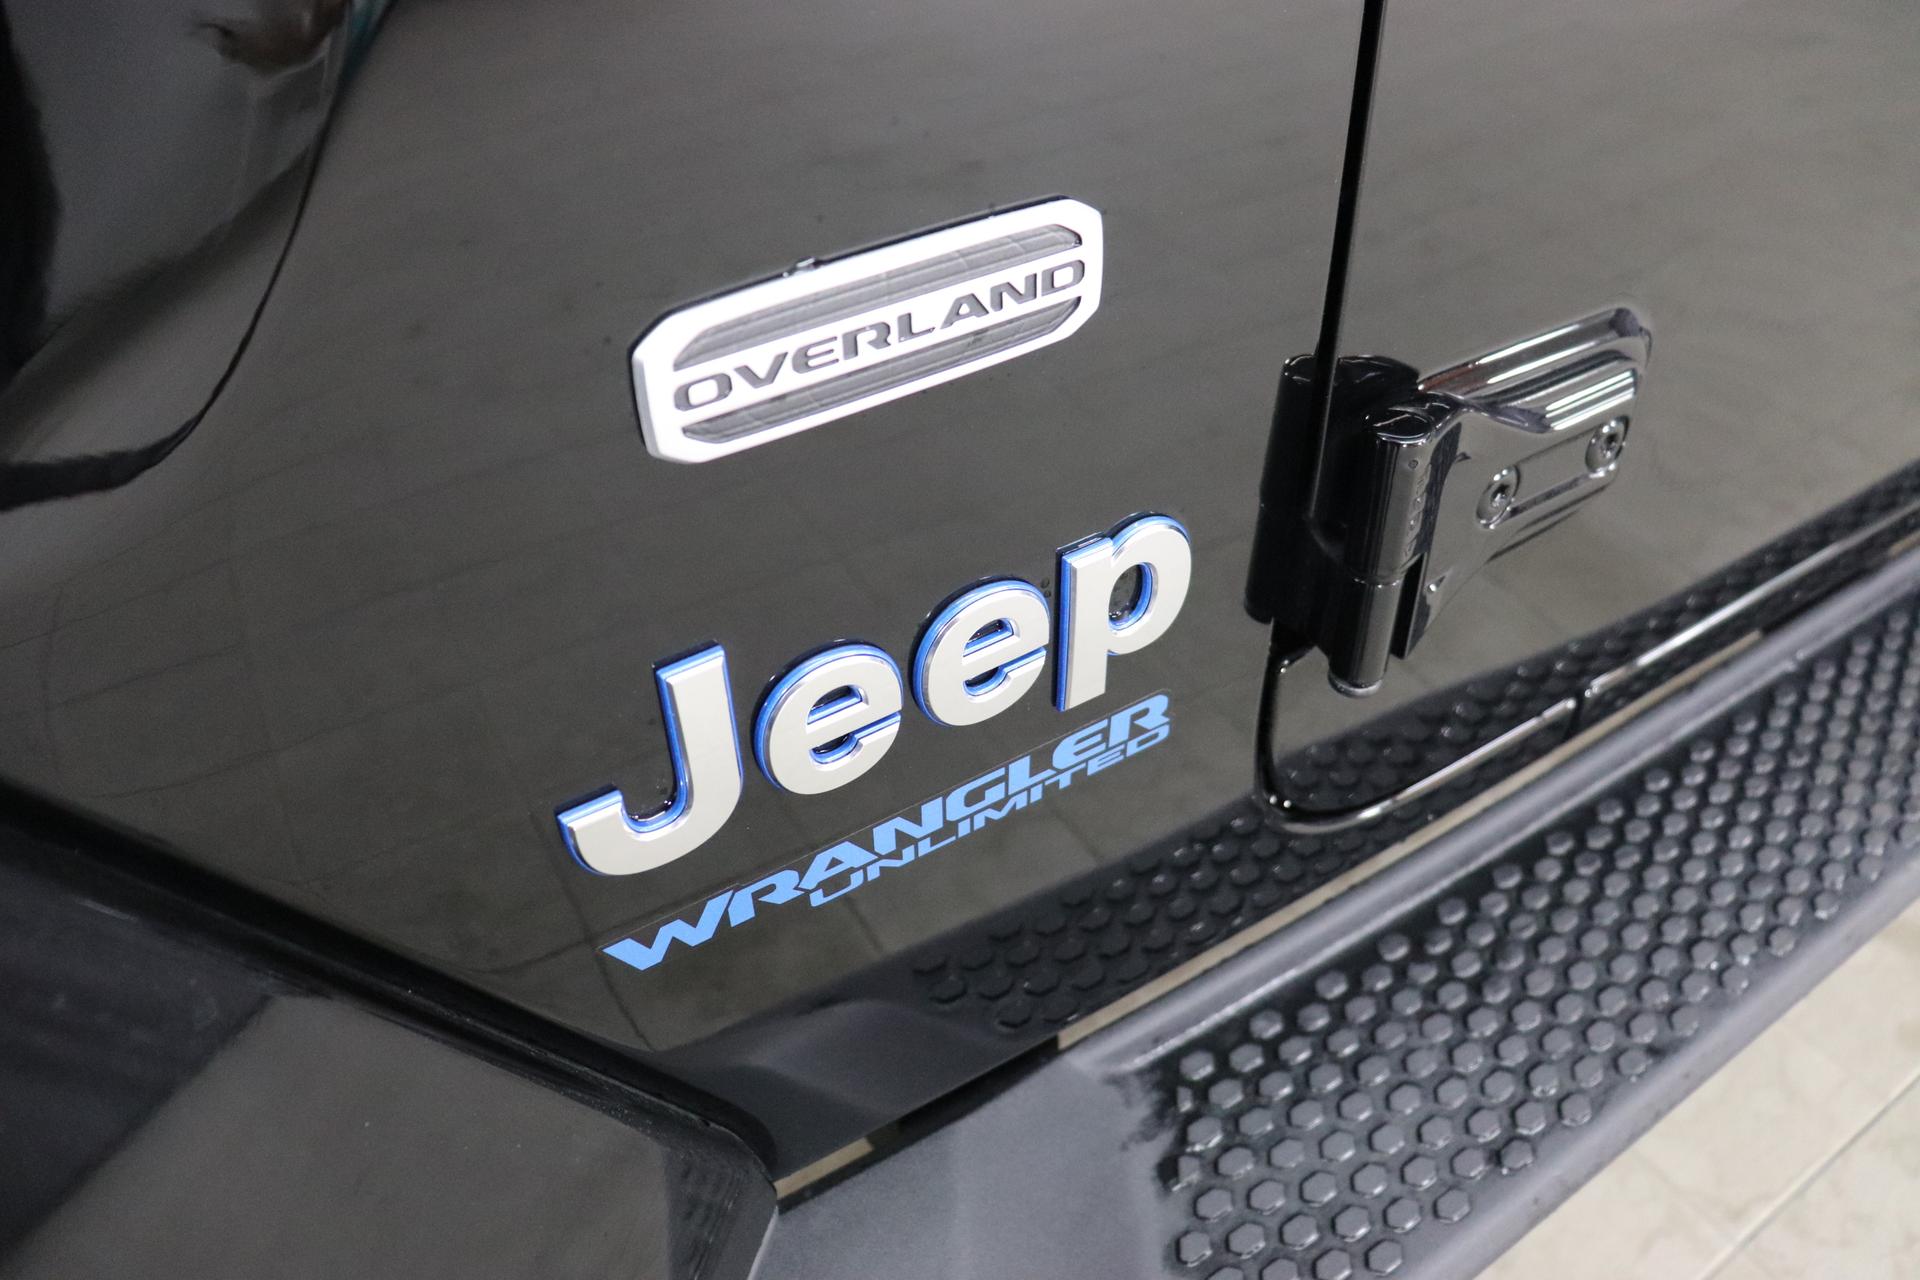 Jeep Wrangler Unlimited Sahara 2,0 280KW UVP 84.050,00 € Plug-In Hybrid, Overland  Paket, Dachhimmel mit zusätzlicher Geräuschdämmung, Alarmanlage, Sicherheitspaket  Geschwindigkeitsregelanlage adaptiv, Totwinkel Assistent hinterer  Querbewegungserkennug